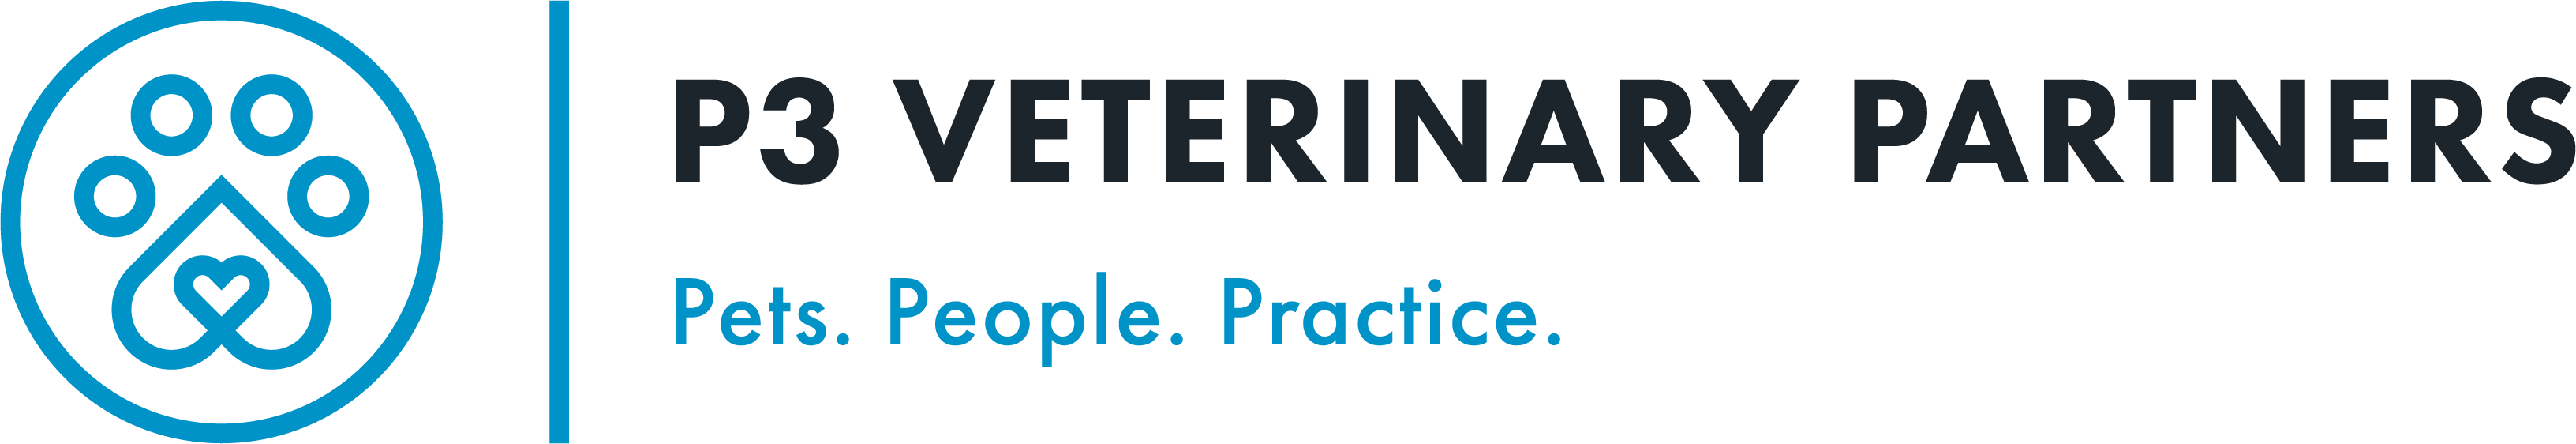 P3 Veterinary Partners logo